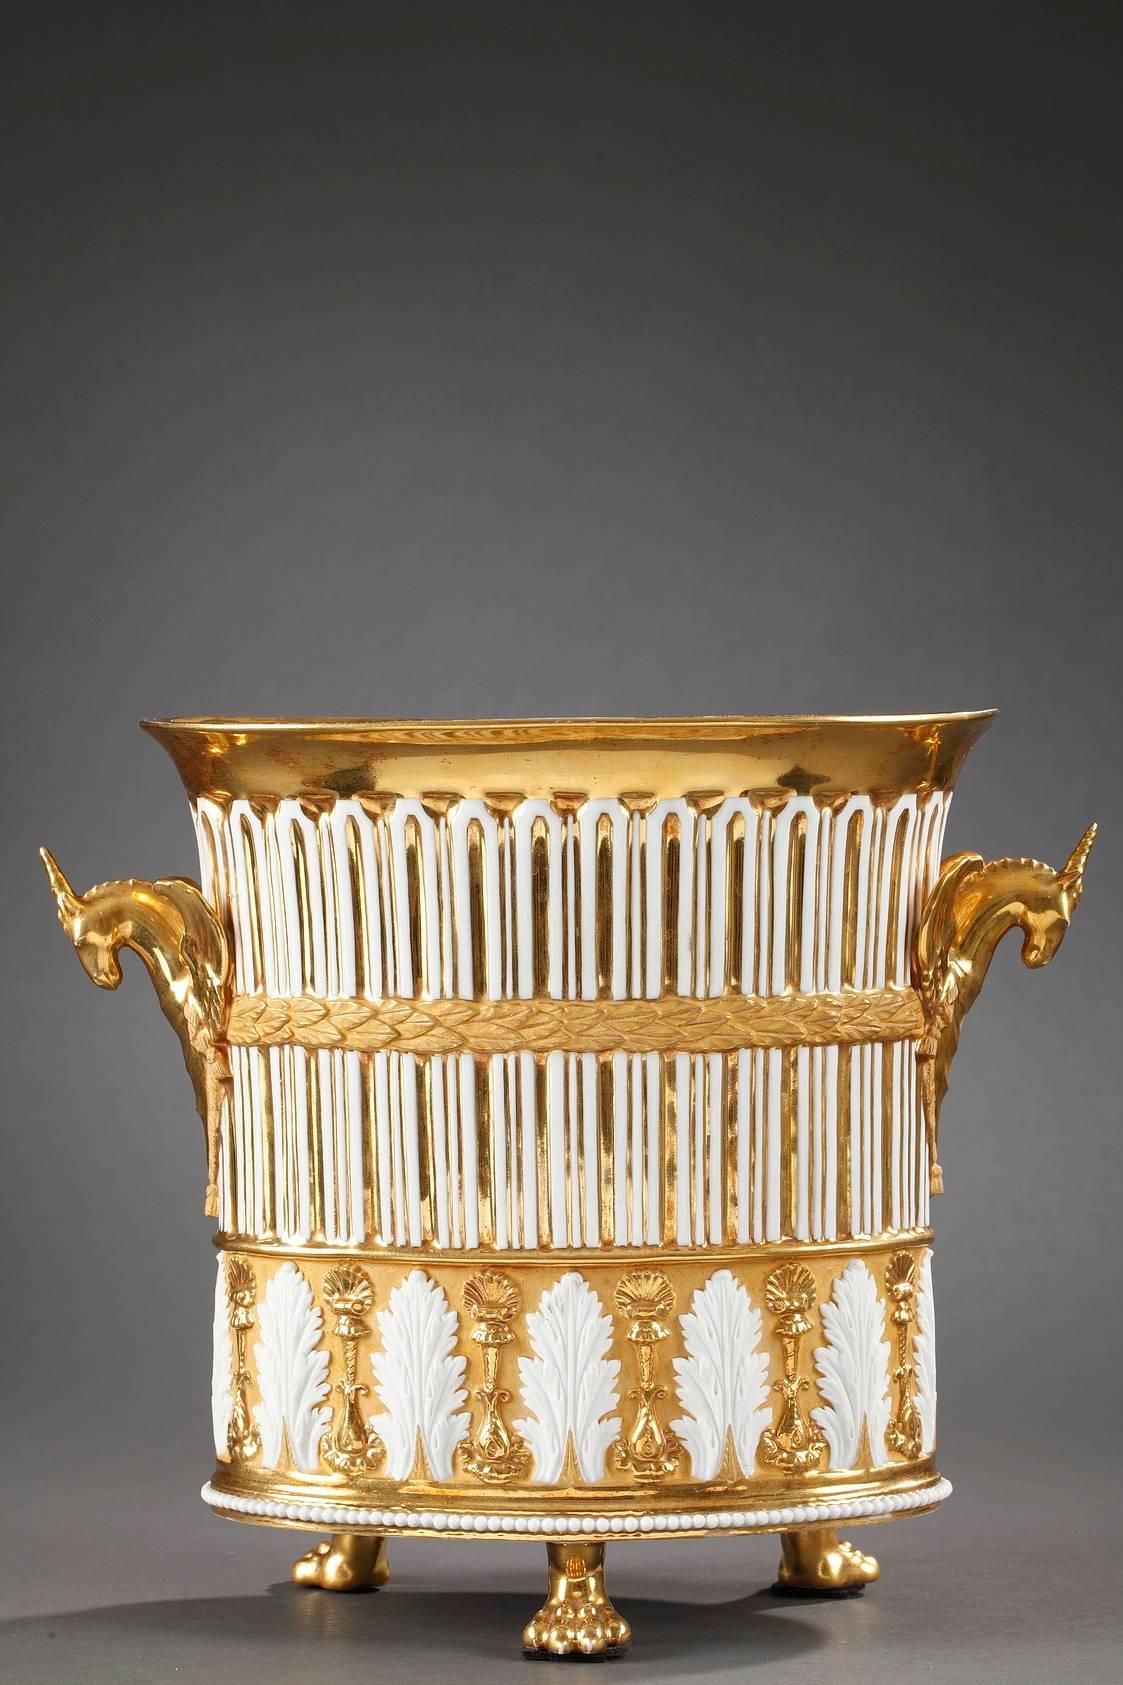 Pendule de cheminée en forme de vase en porcelaine dorée. Des aiguilles Breguet indiquent les heures et les minutes sur un cadran émaillé blanc, les heures étant indiquées en chiffres romains. La porcelaine est entrecoupée de dorures pour former des